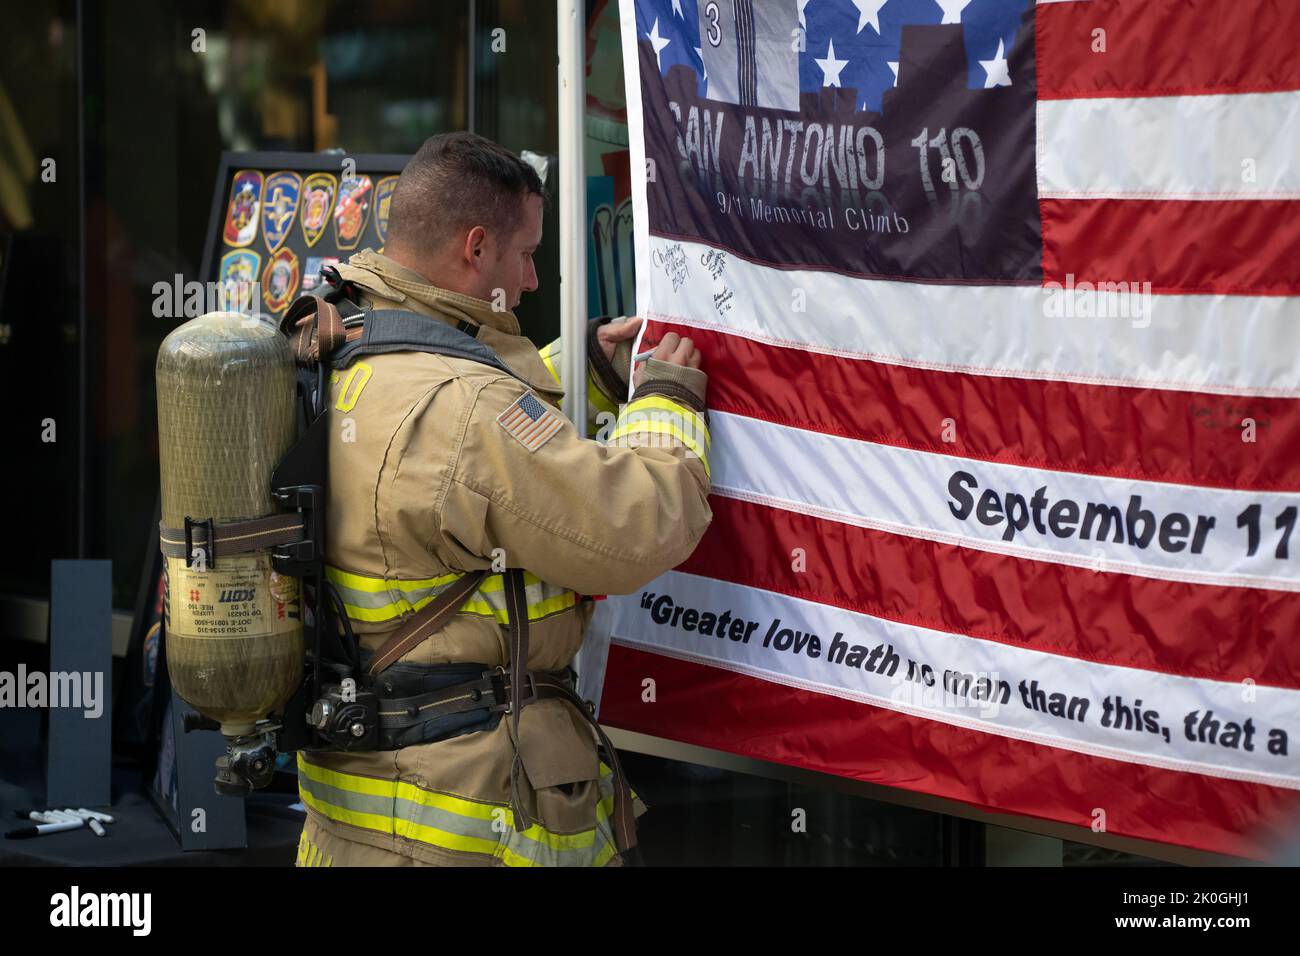 Un vigile del fuoco firma una bandiera commemorativa dopo aver partecipato al monumento commemorativo di San Antonio 110 9/11 salire sulla Torre delle Americhe. Foto Stock